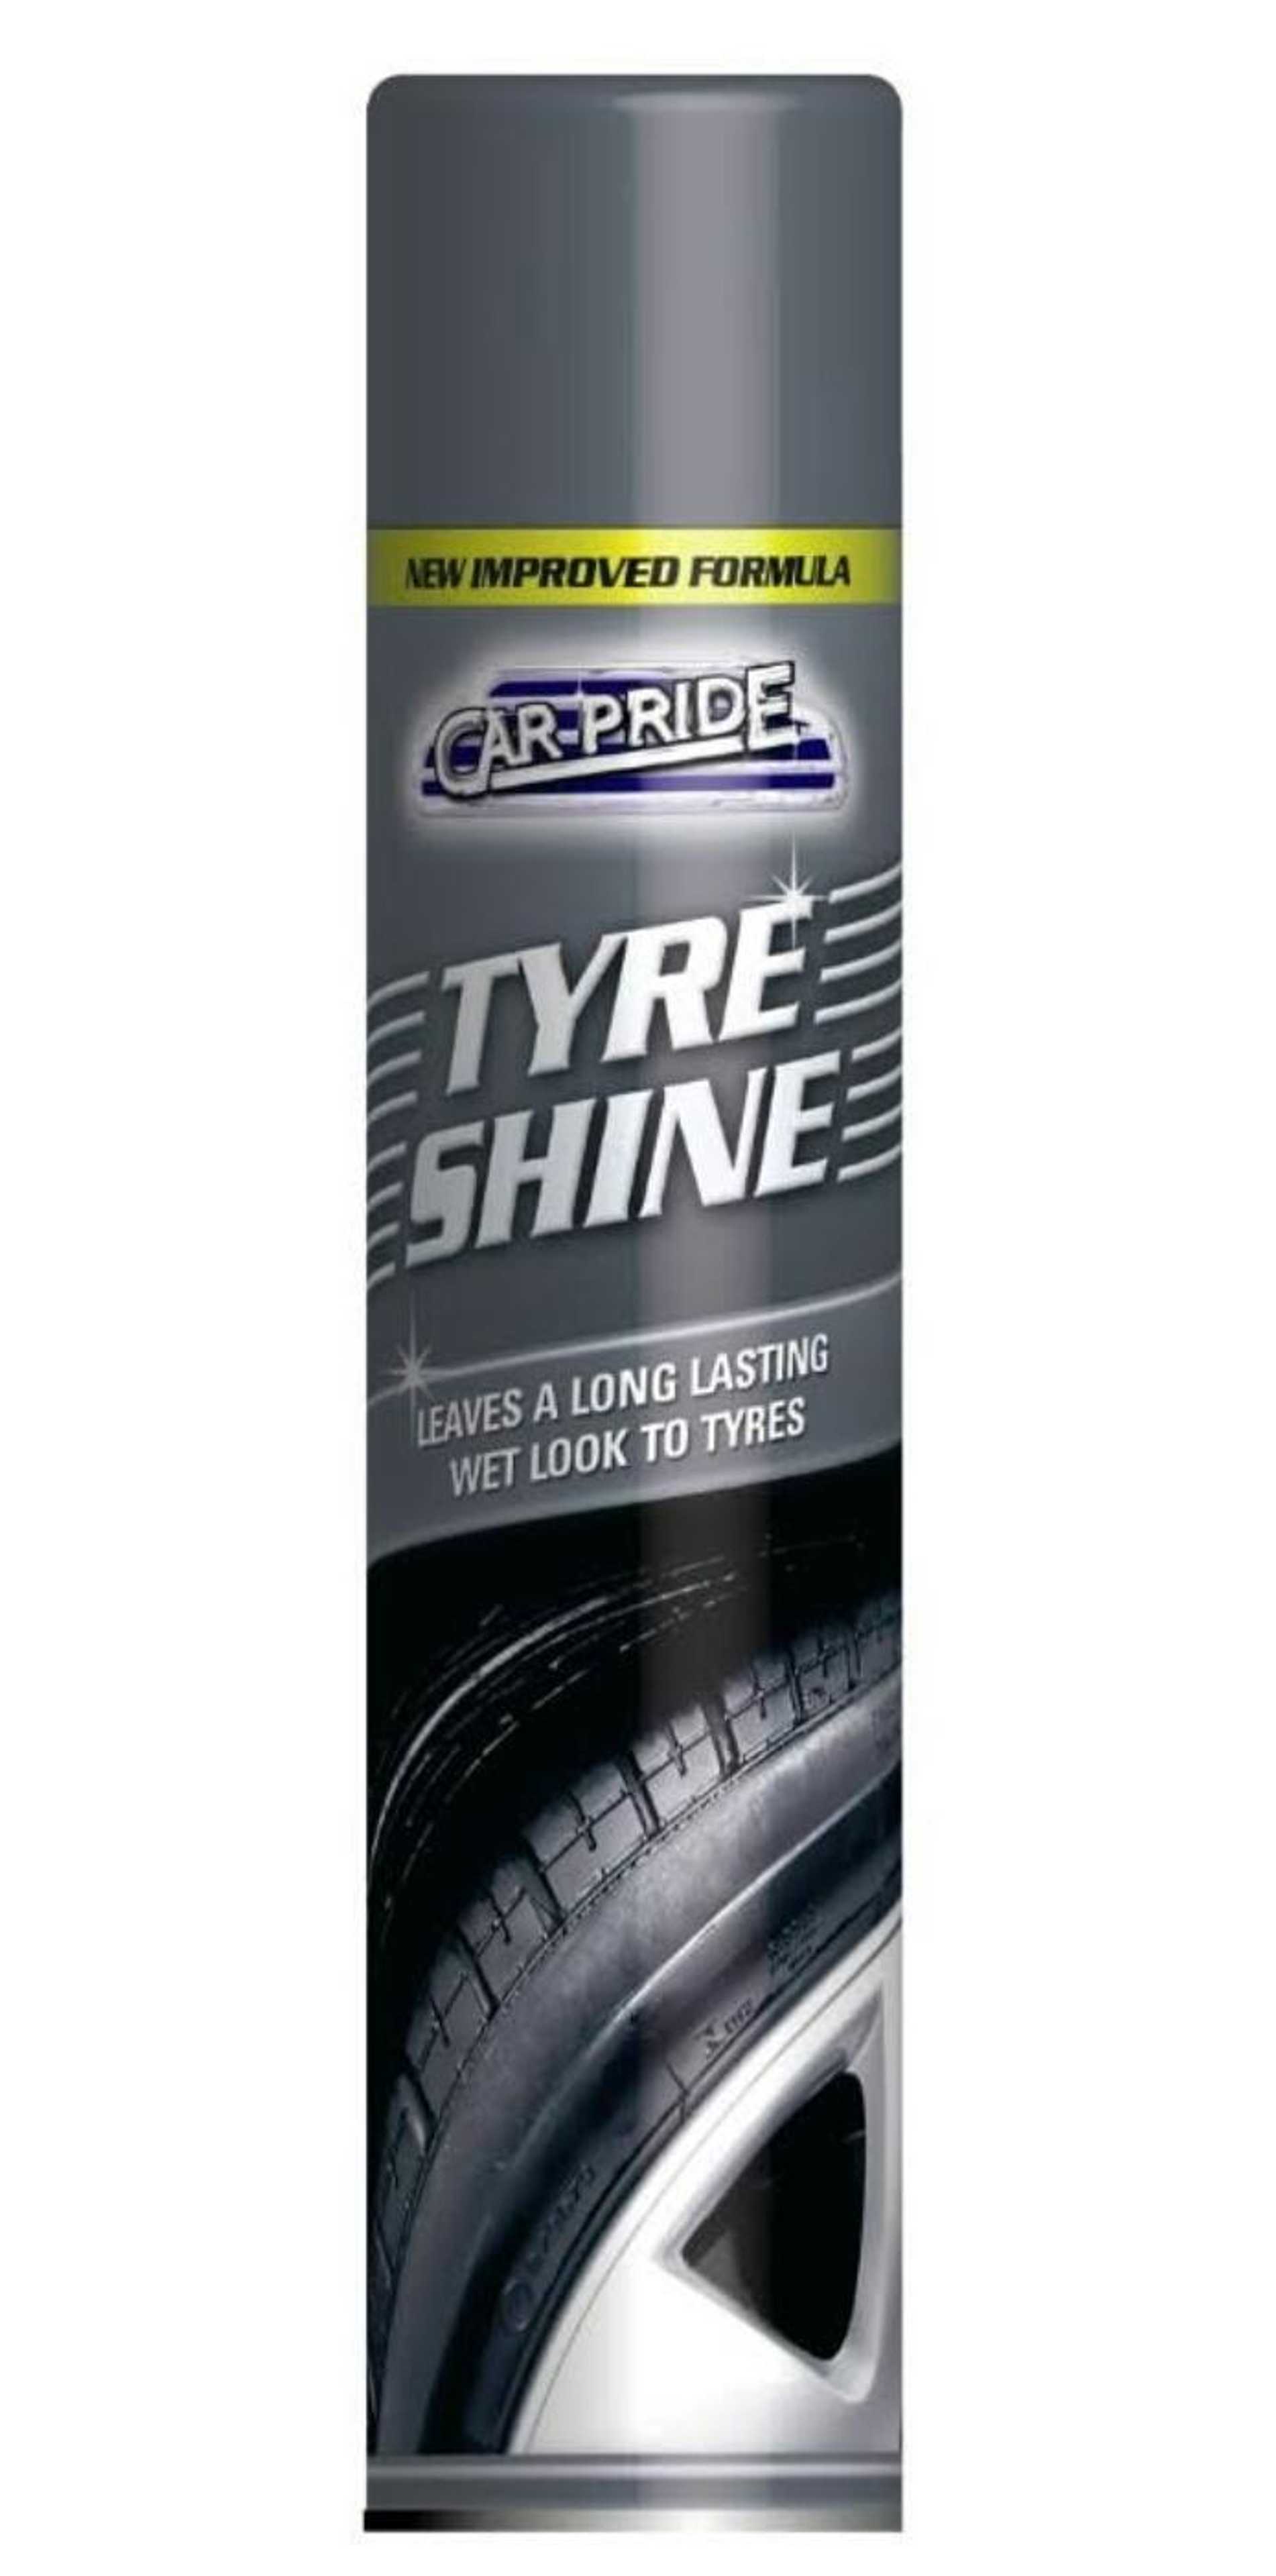 Car Pride Tyre Shine 250Ml